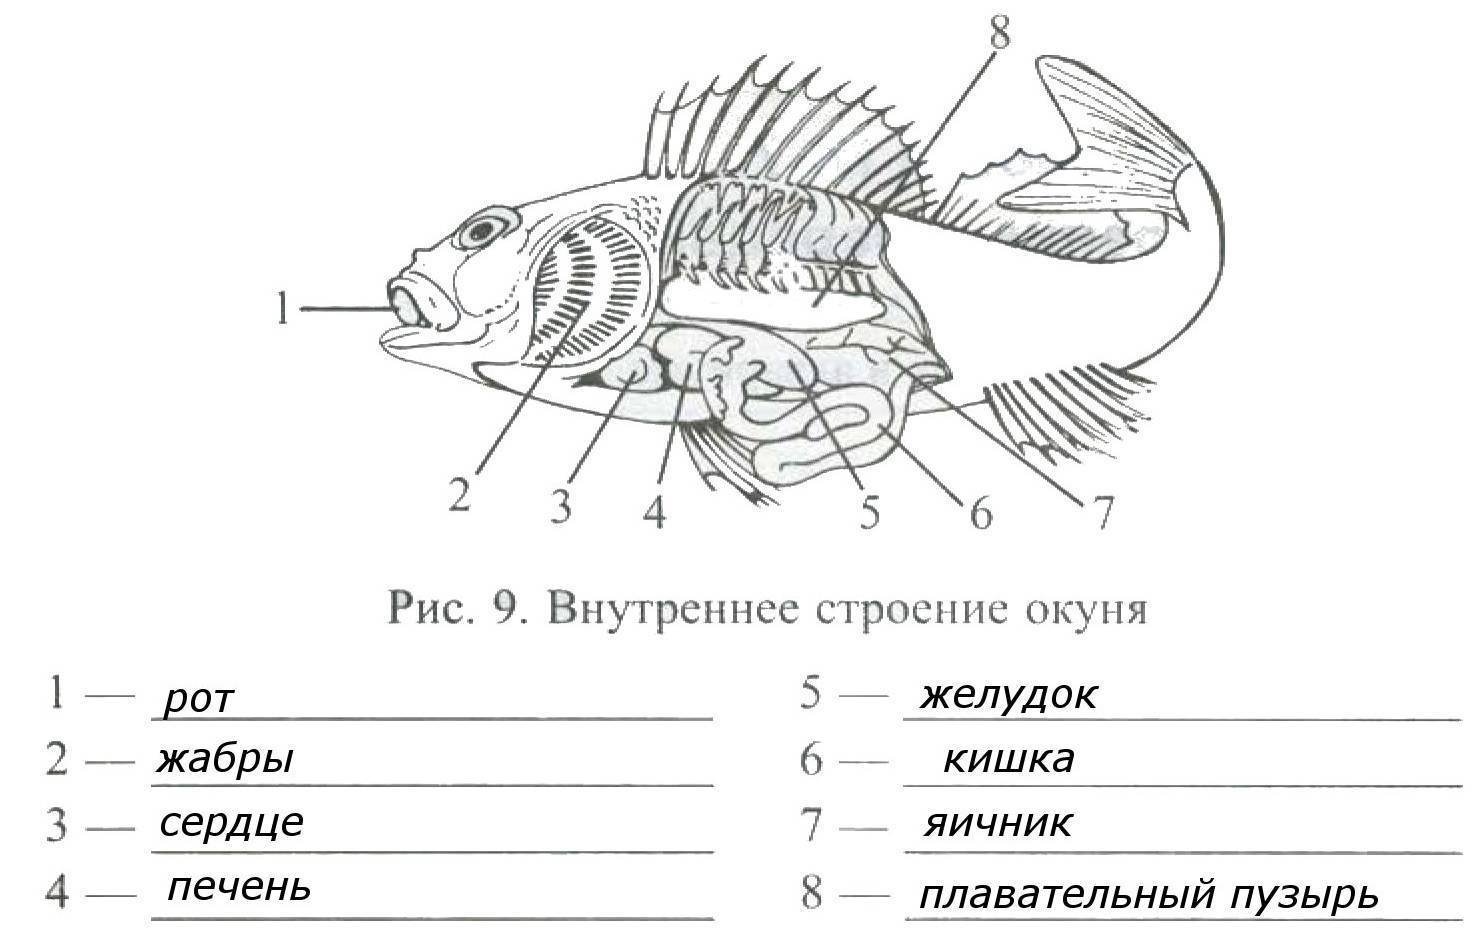 Биология 7 класс параграф рыбы. Внутренне строение речного окуня. Внутреннее строение окуня биология 7 класс. Внешнее и внутреннее строение рыбы 7 класс биология. Внутреннее строение окуня биология 7 класс рисунок.